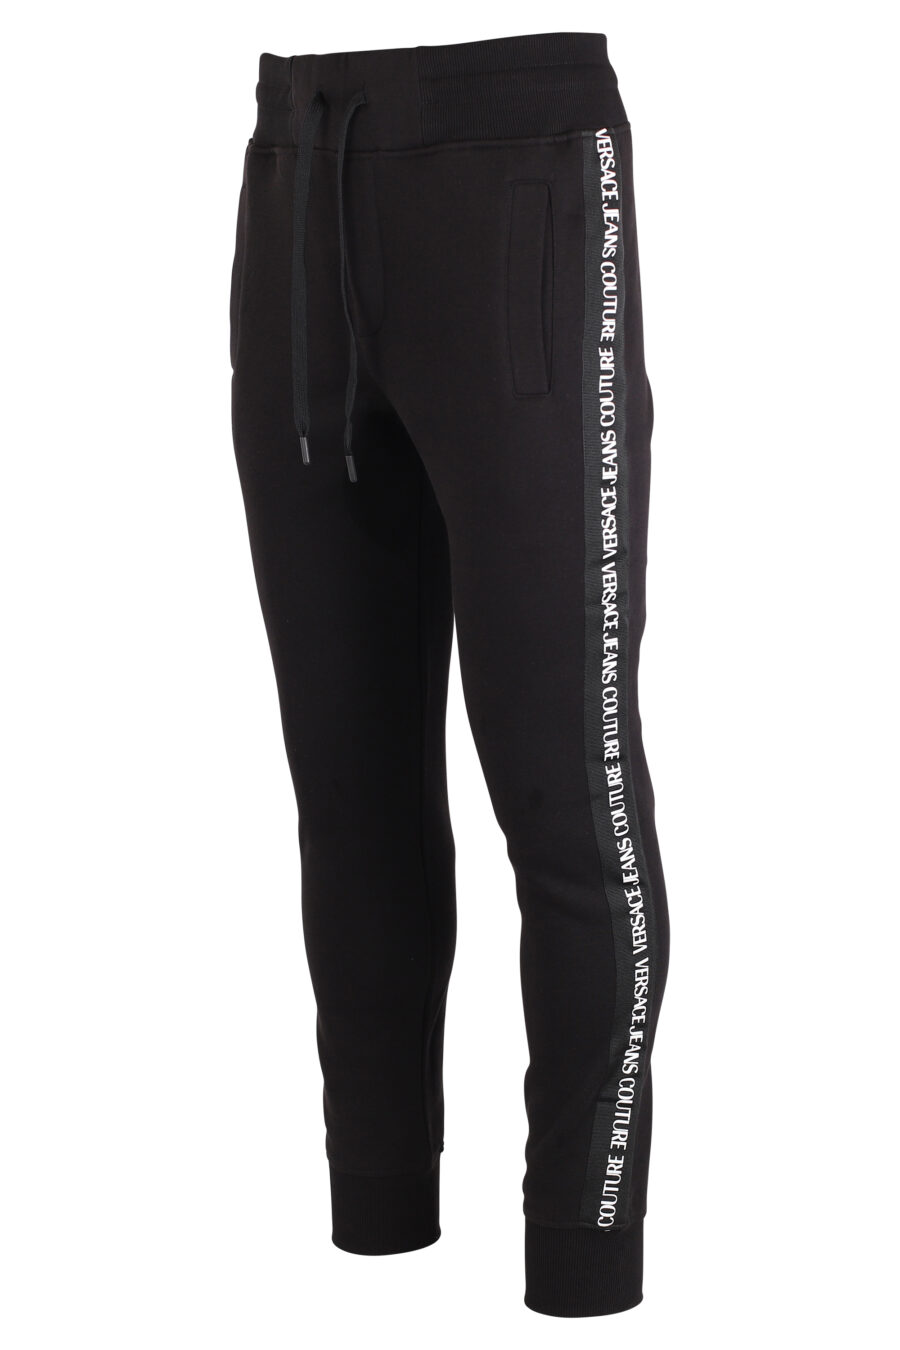 Pantalón de chandal negro con mini logo vertical - IMG 4088